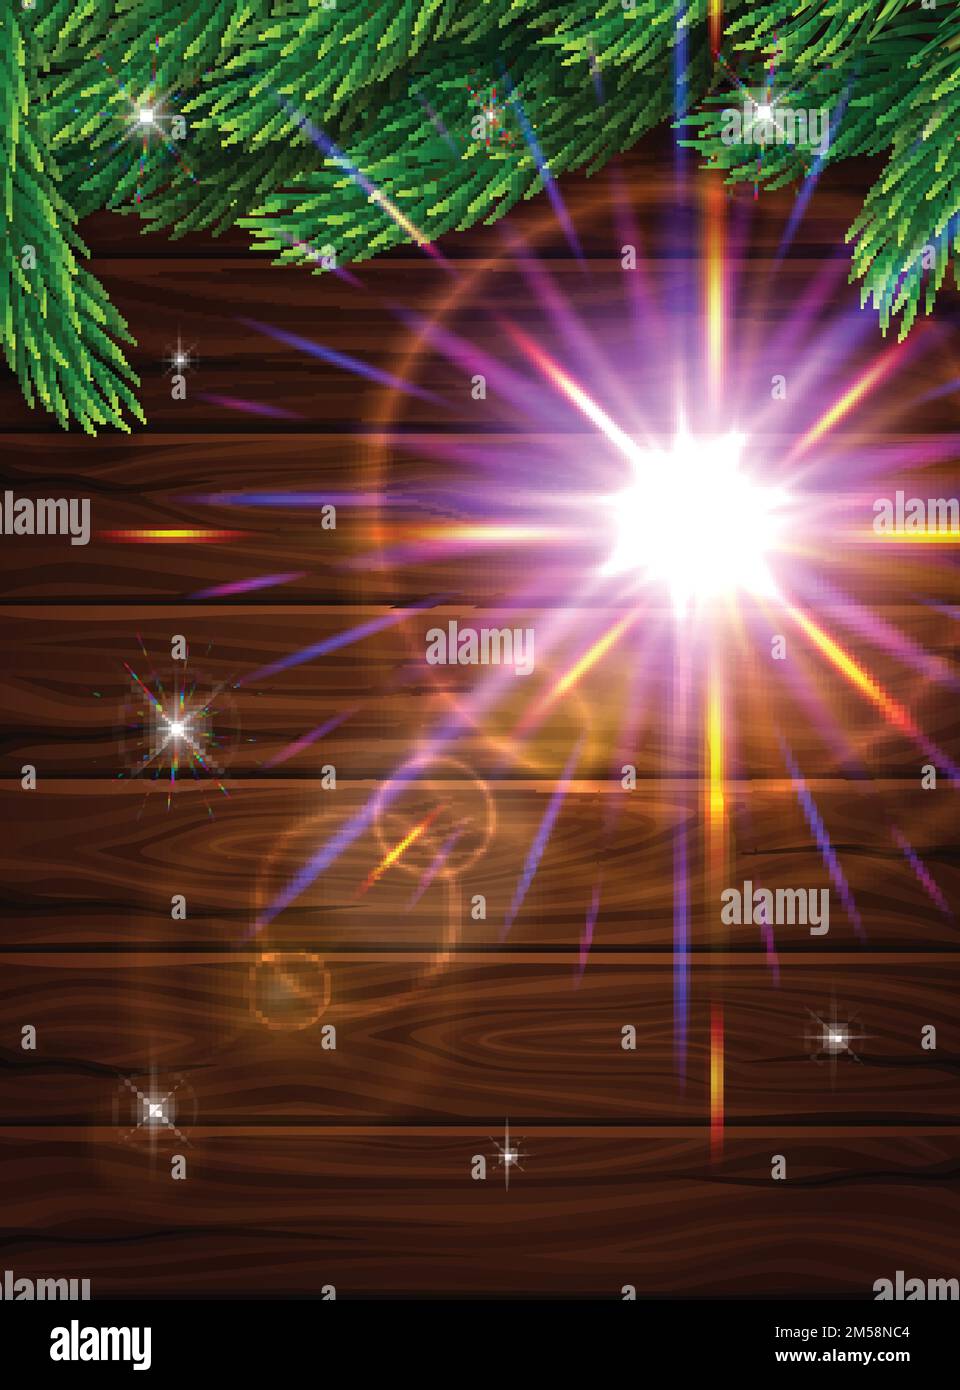 Poster realistico di alta qualità per Natale. Rami realistici di abete sullo sfondo di tavole di legno scuro. Lenti per effetti luminosi. Illlust vettoriale Illustrazione Vettoriale